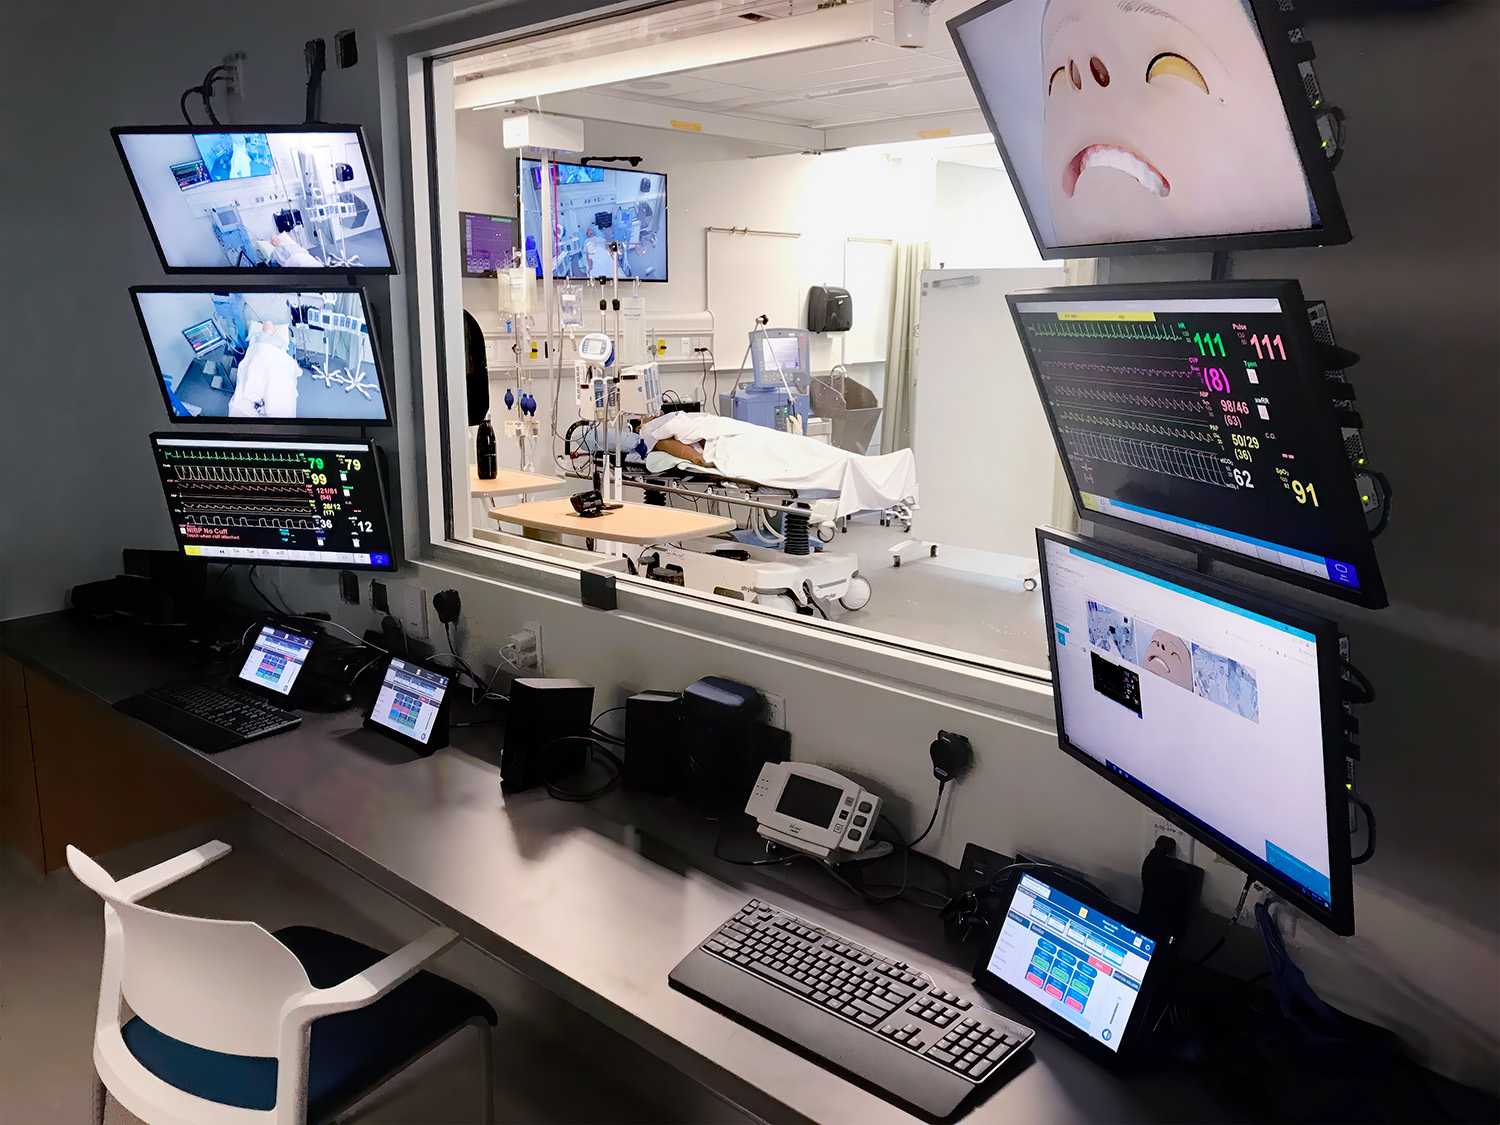 Un operador en la sala de control puede observar las actividades del laboratorio y responder a los gestos visuales y comandos verbales de un instructor durante una lección.